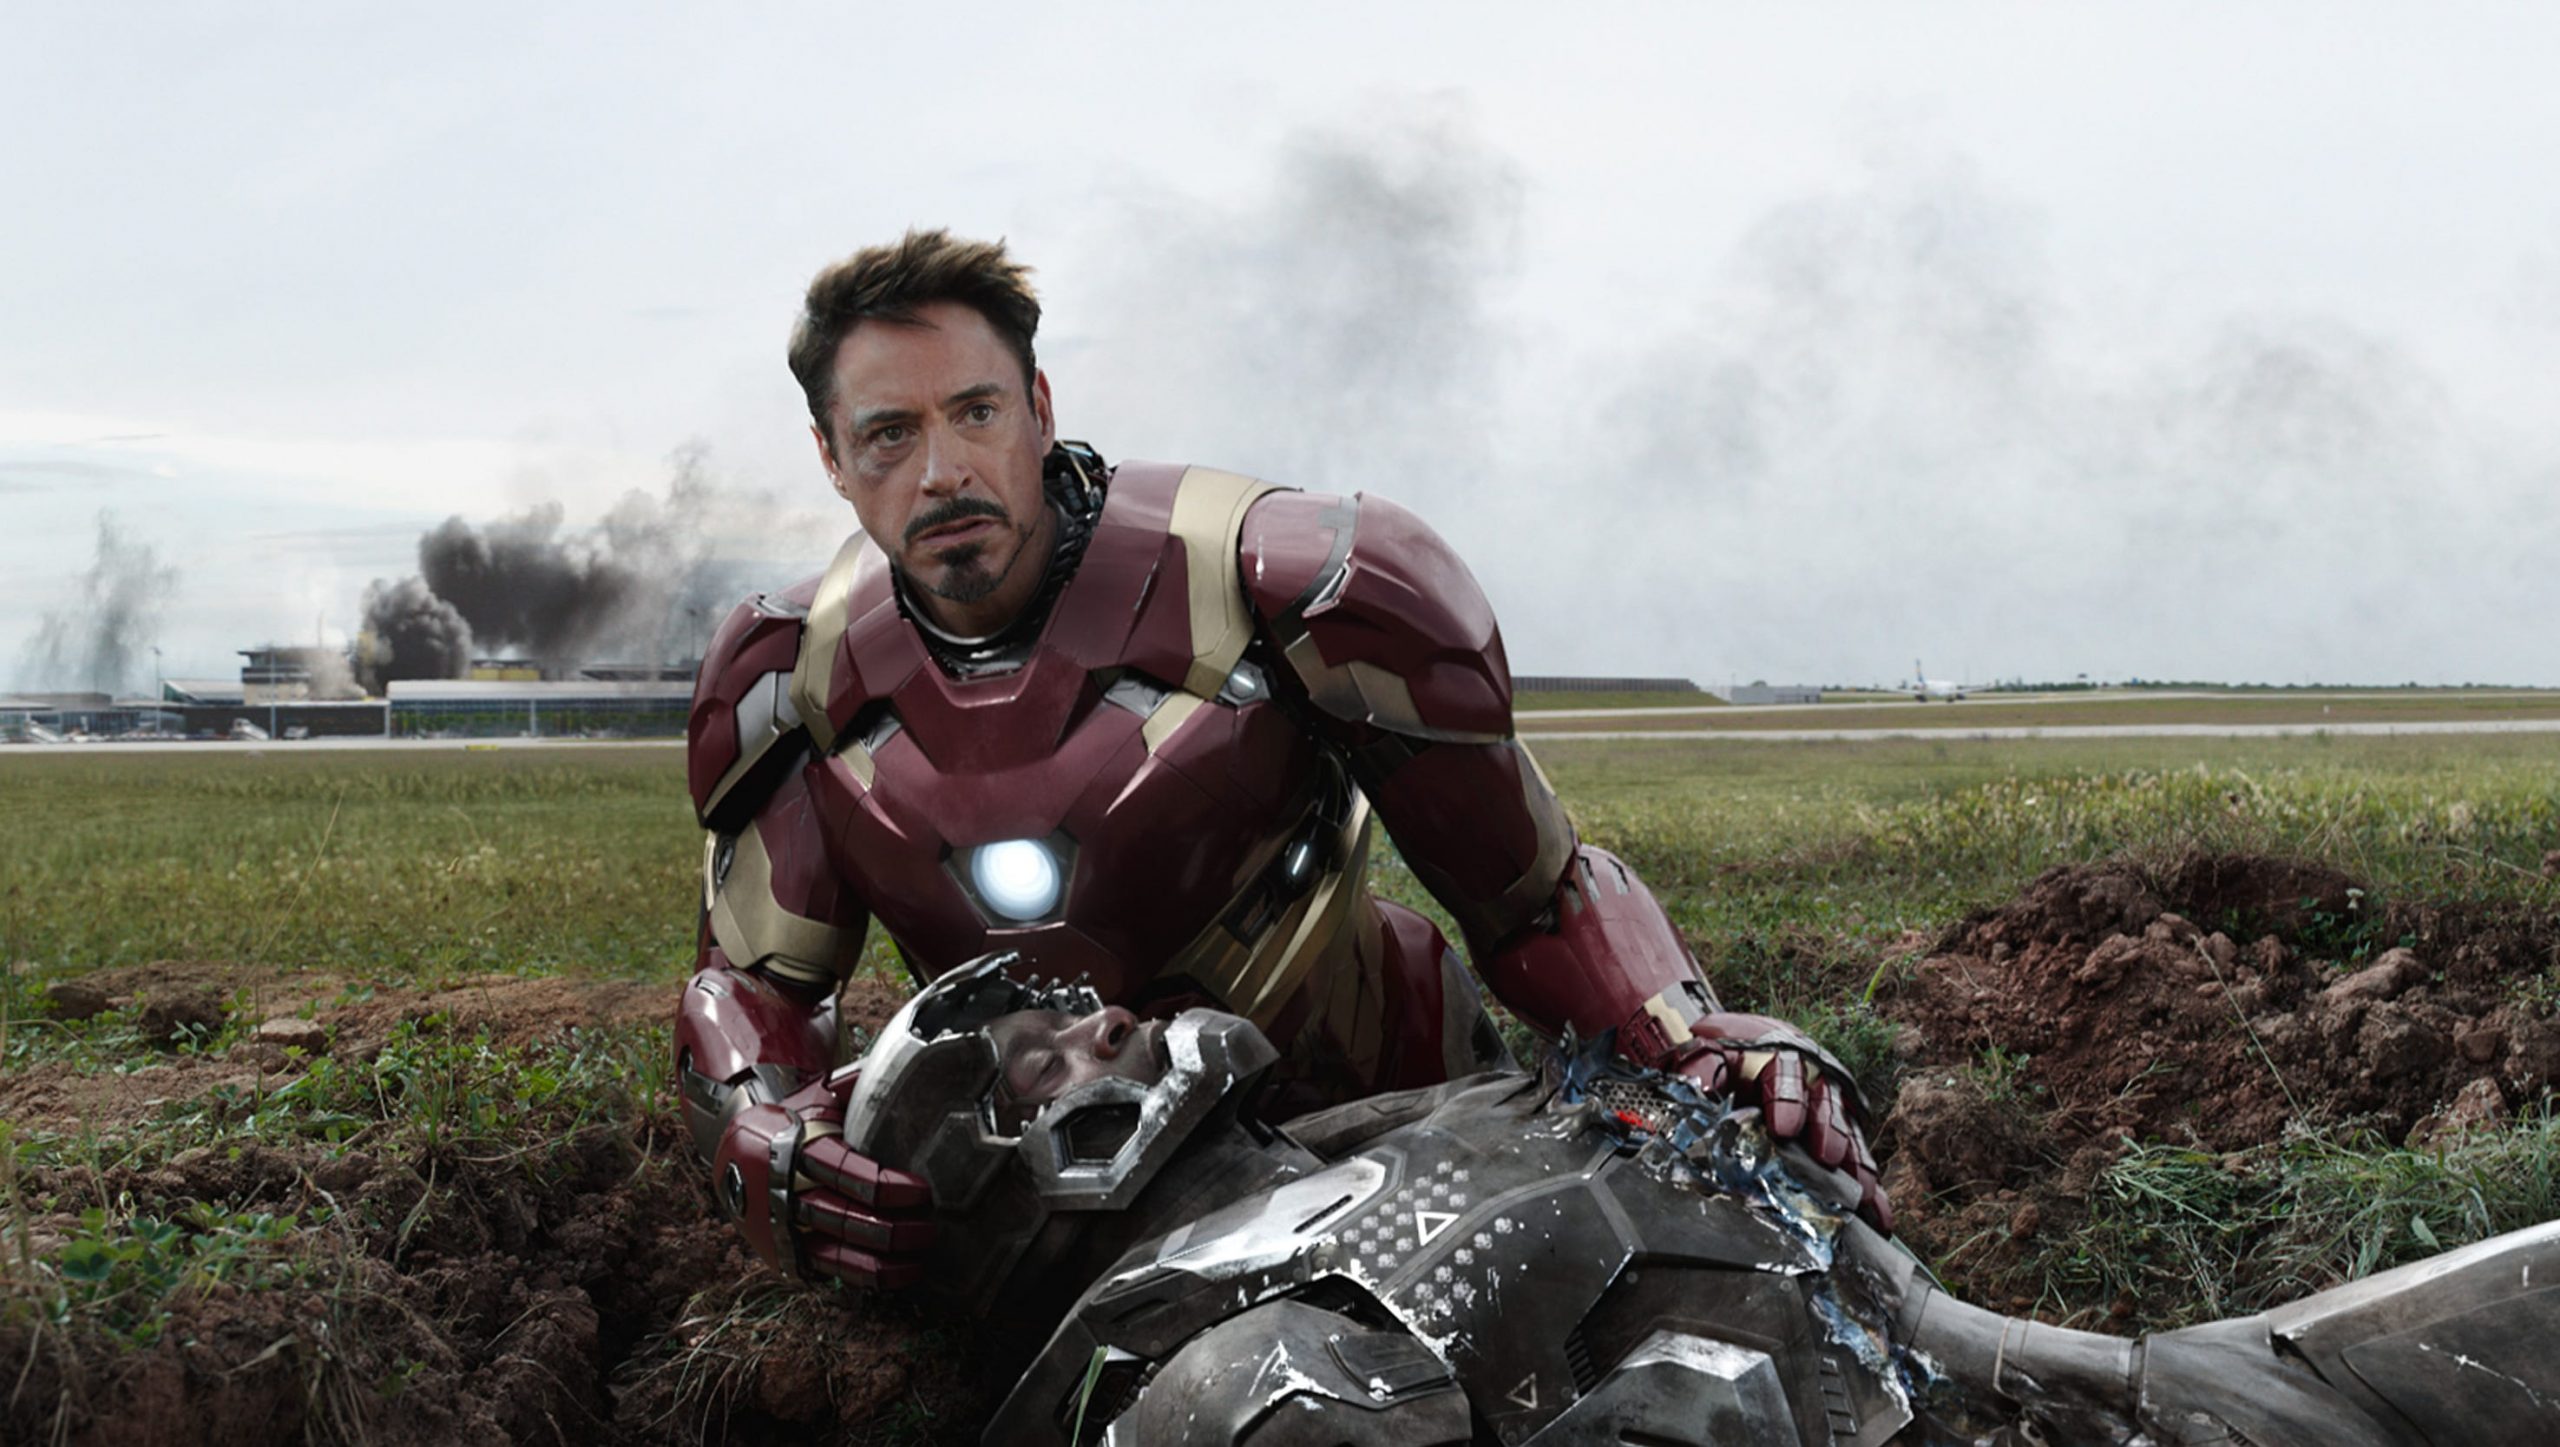 Robert Downey Jr's Iron Man in Captain American: Civil War.